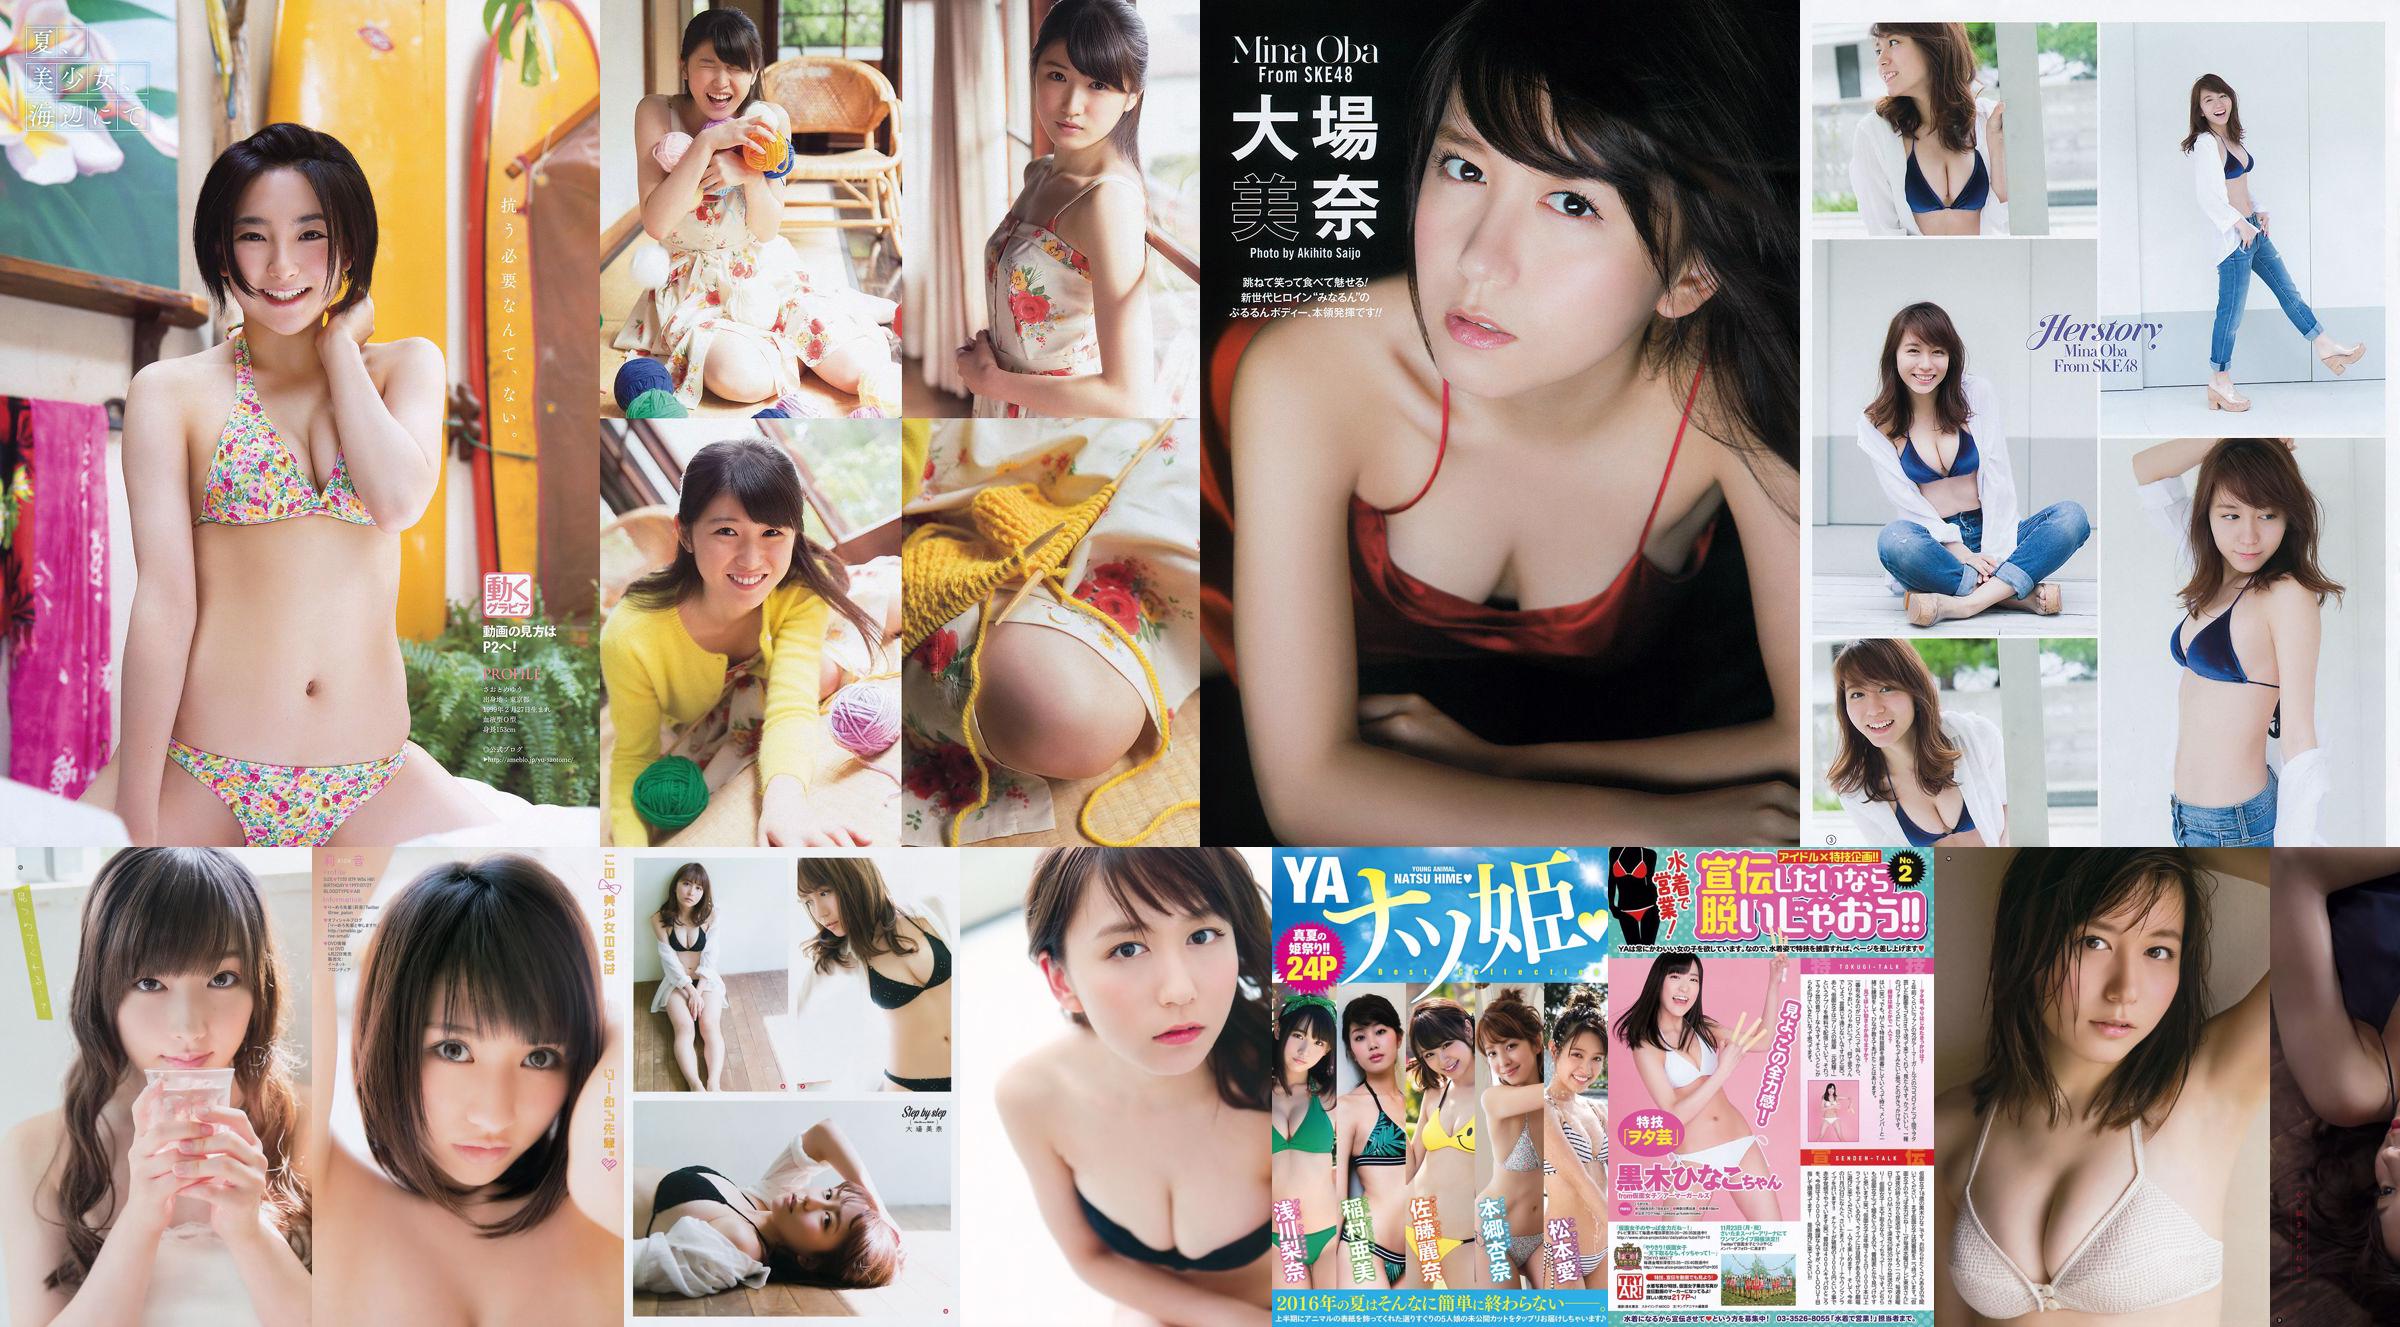 [Young Gangan] Mina Oba You Kikkawa Hitomi Yasueda 2015 No.10 Fotografia No.d7469a Página 1